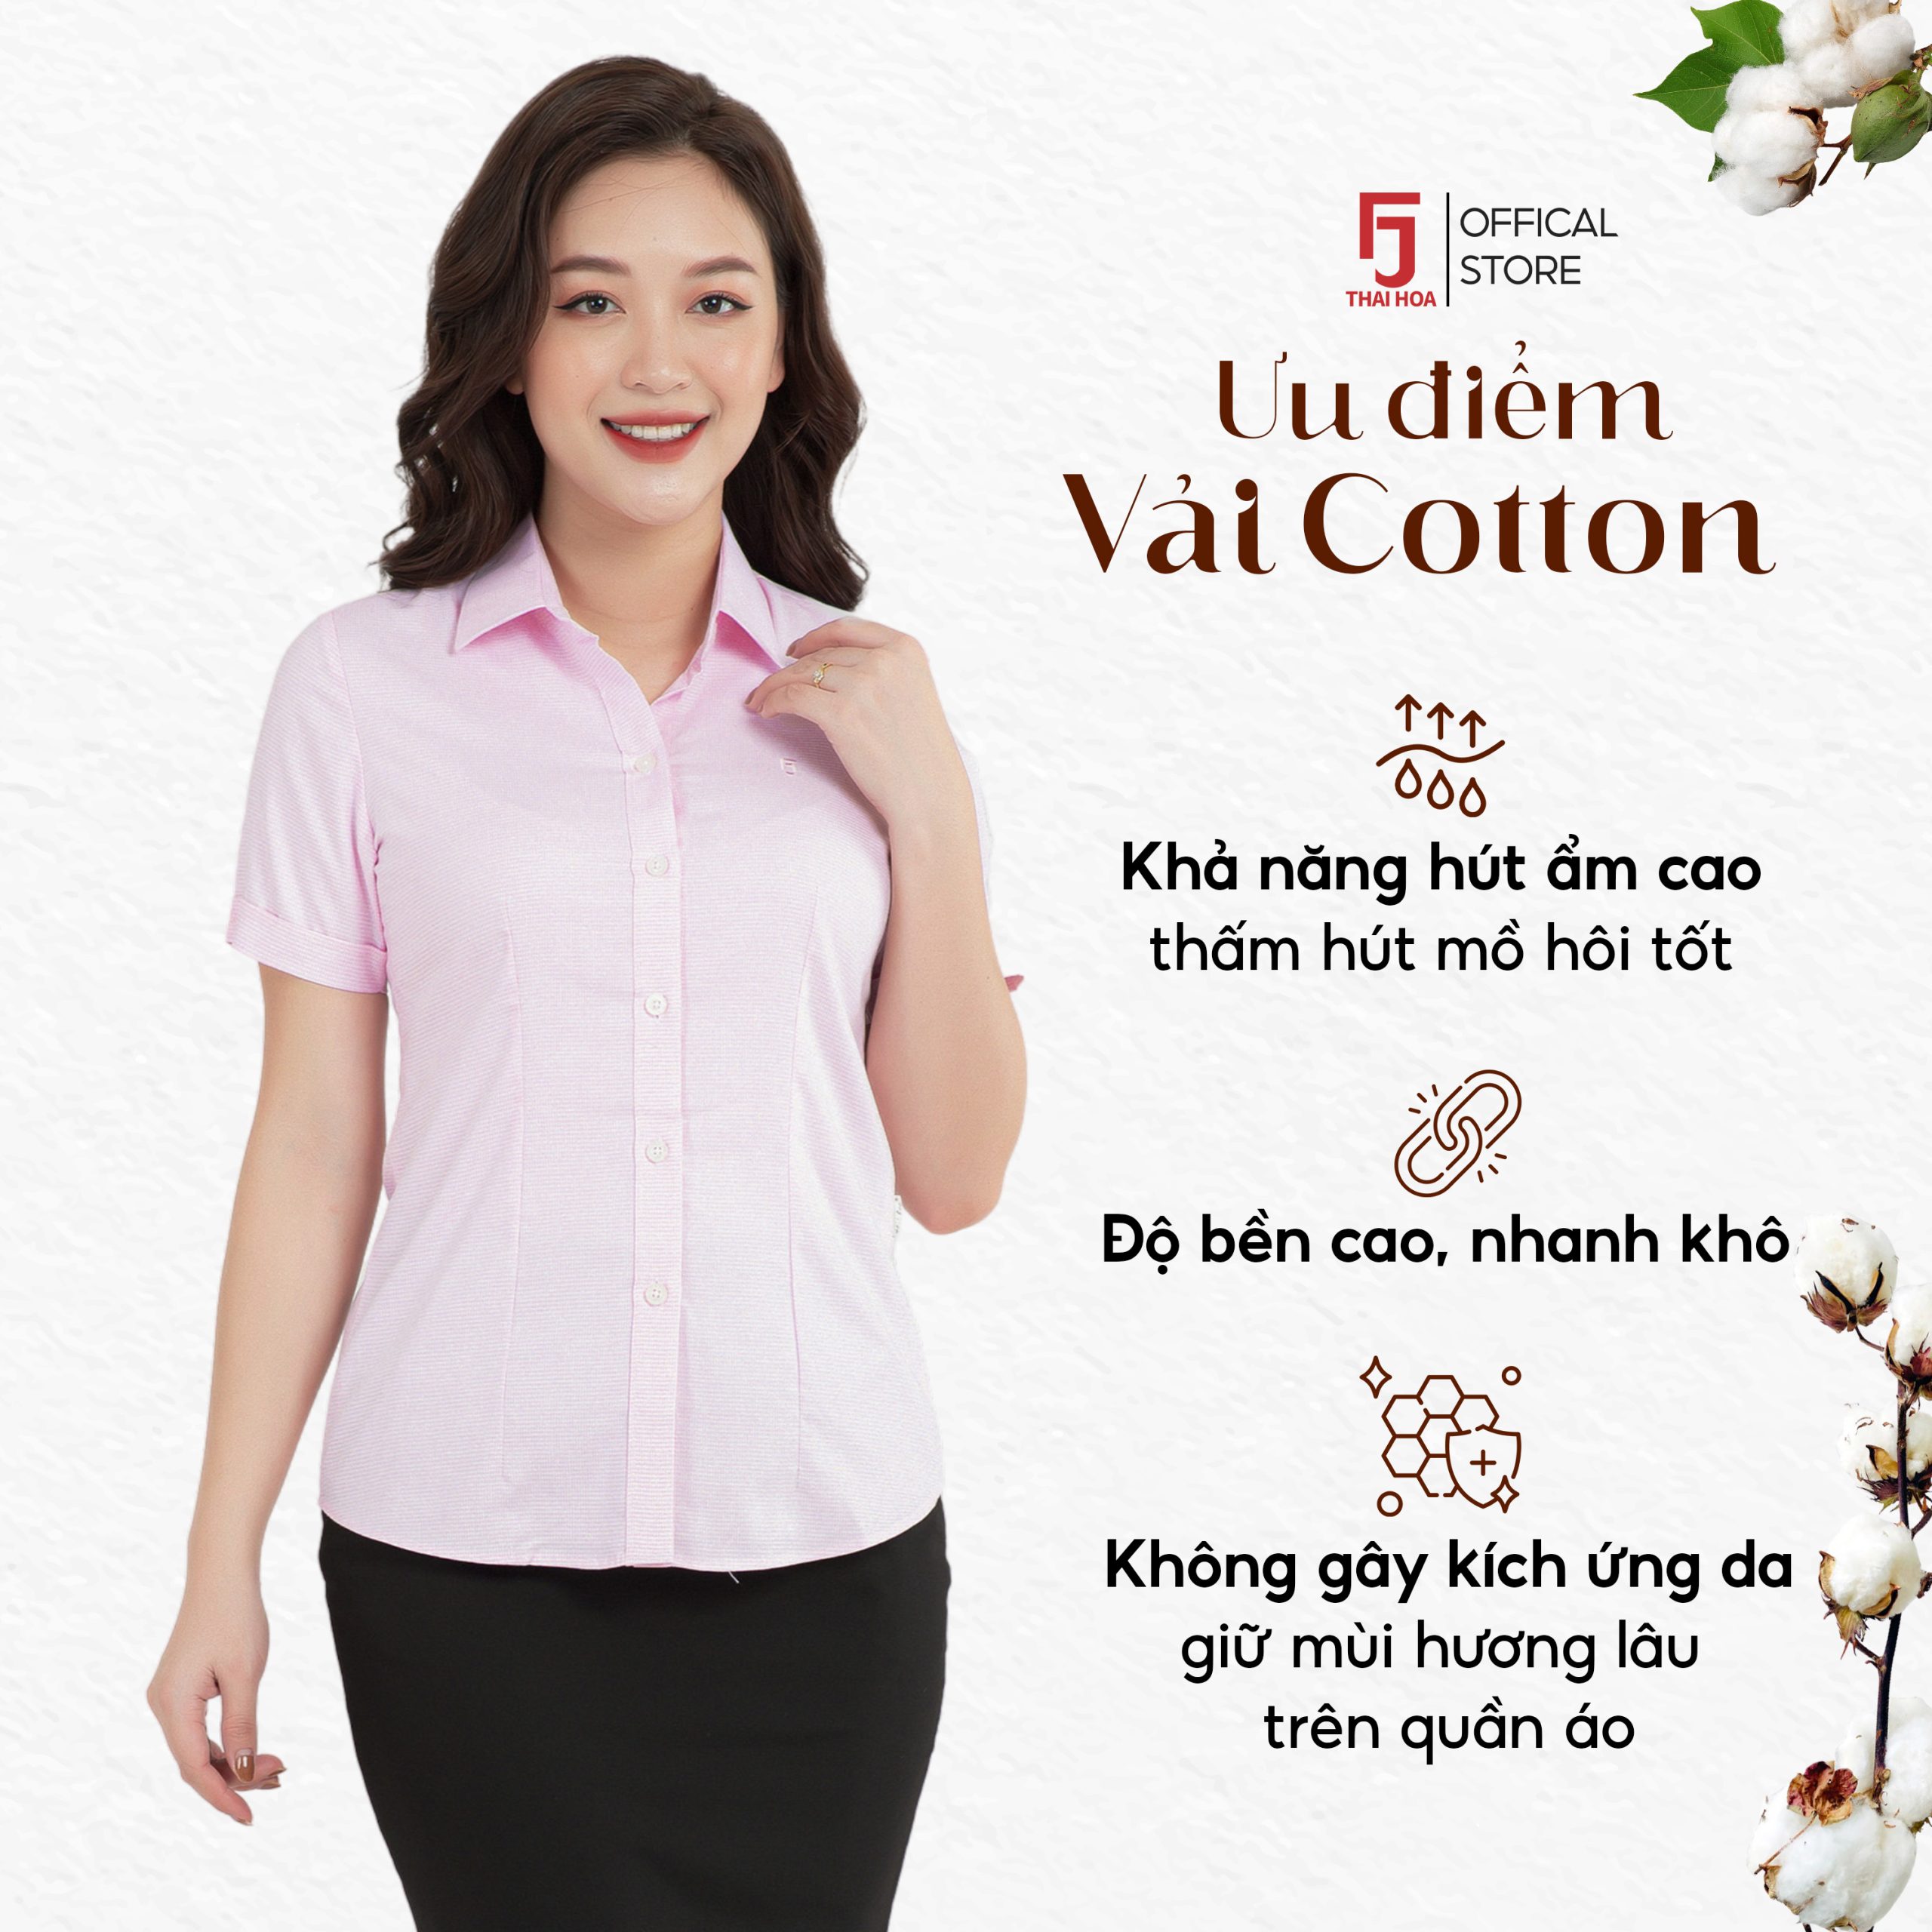 Áo sơ mi nữ công sở thiết kế ngắn tay sọc kẻ nhuyễn nhiều màu Thái Hòa ASW0301-R05